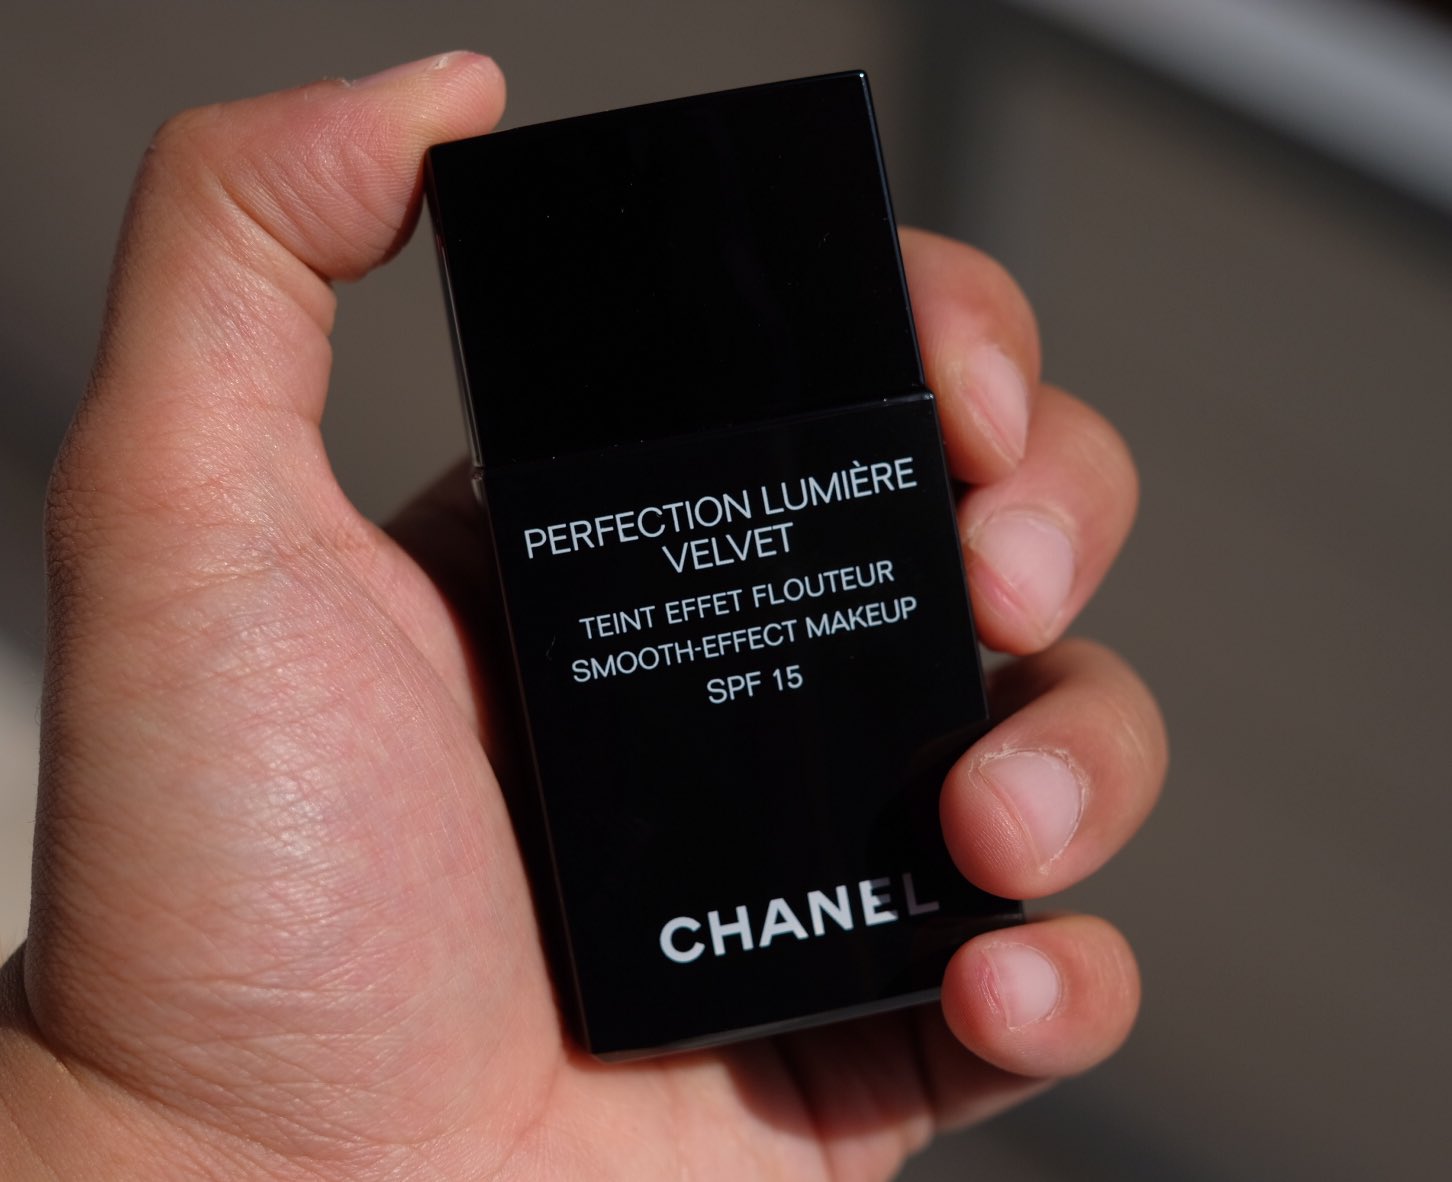 มันเวิร์กแมะ on X: 8. Chanel Perfection Lumiere Velvet Foundation # 40  Beige (2500THB)  / X